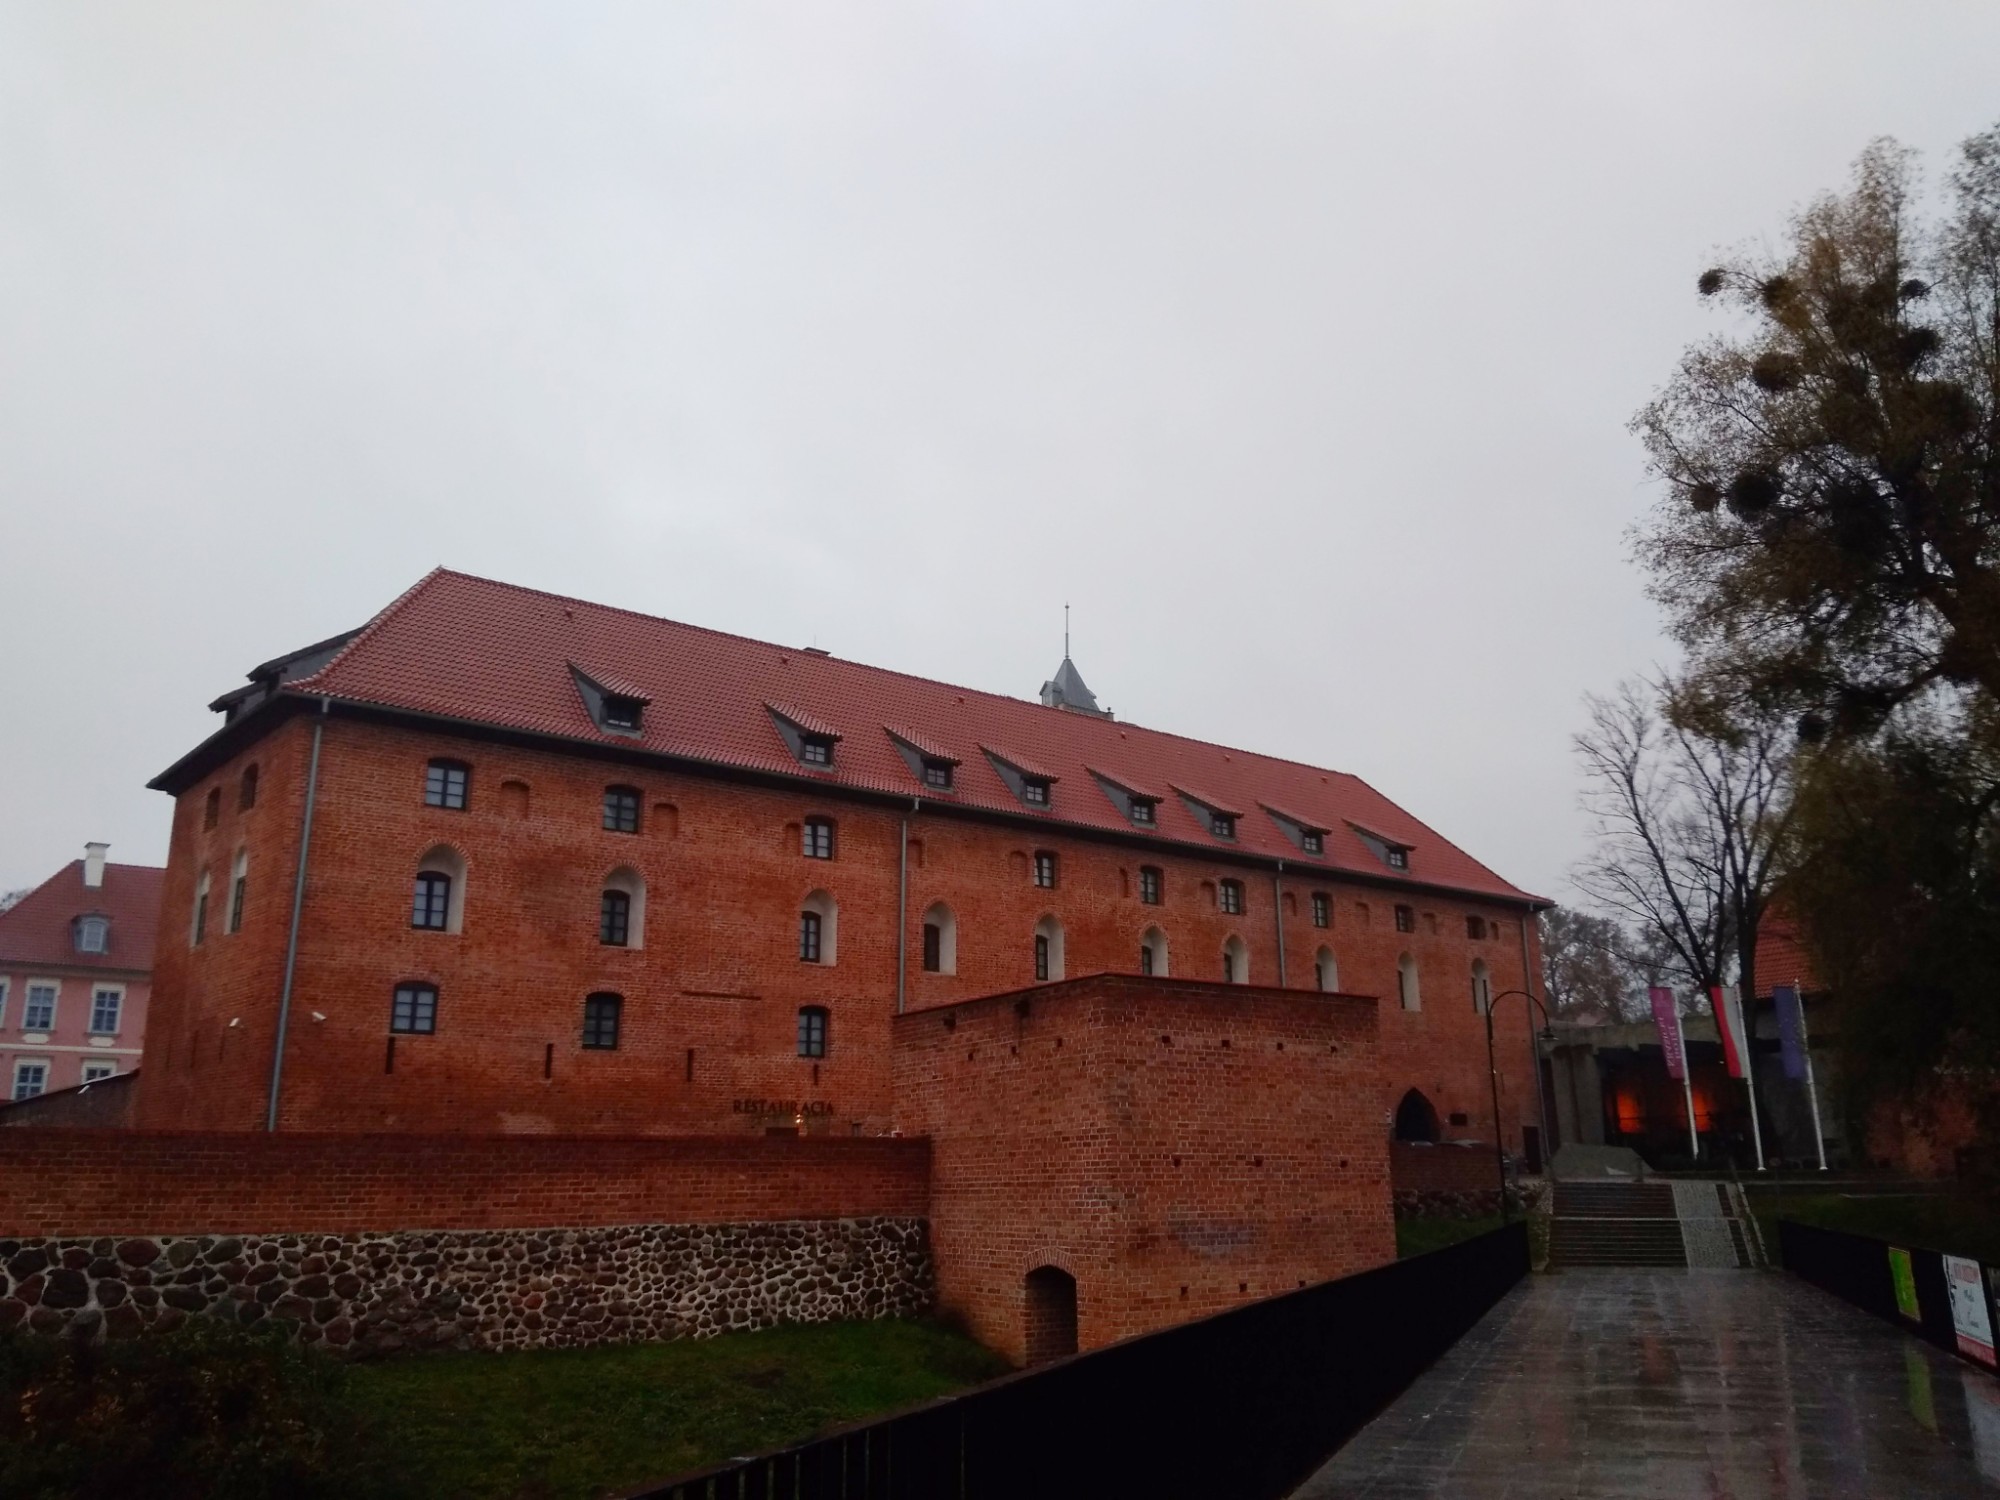 Часть лидзбаргско замка, где у чвоег дяди жил известный учёный Николай Коперник…